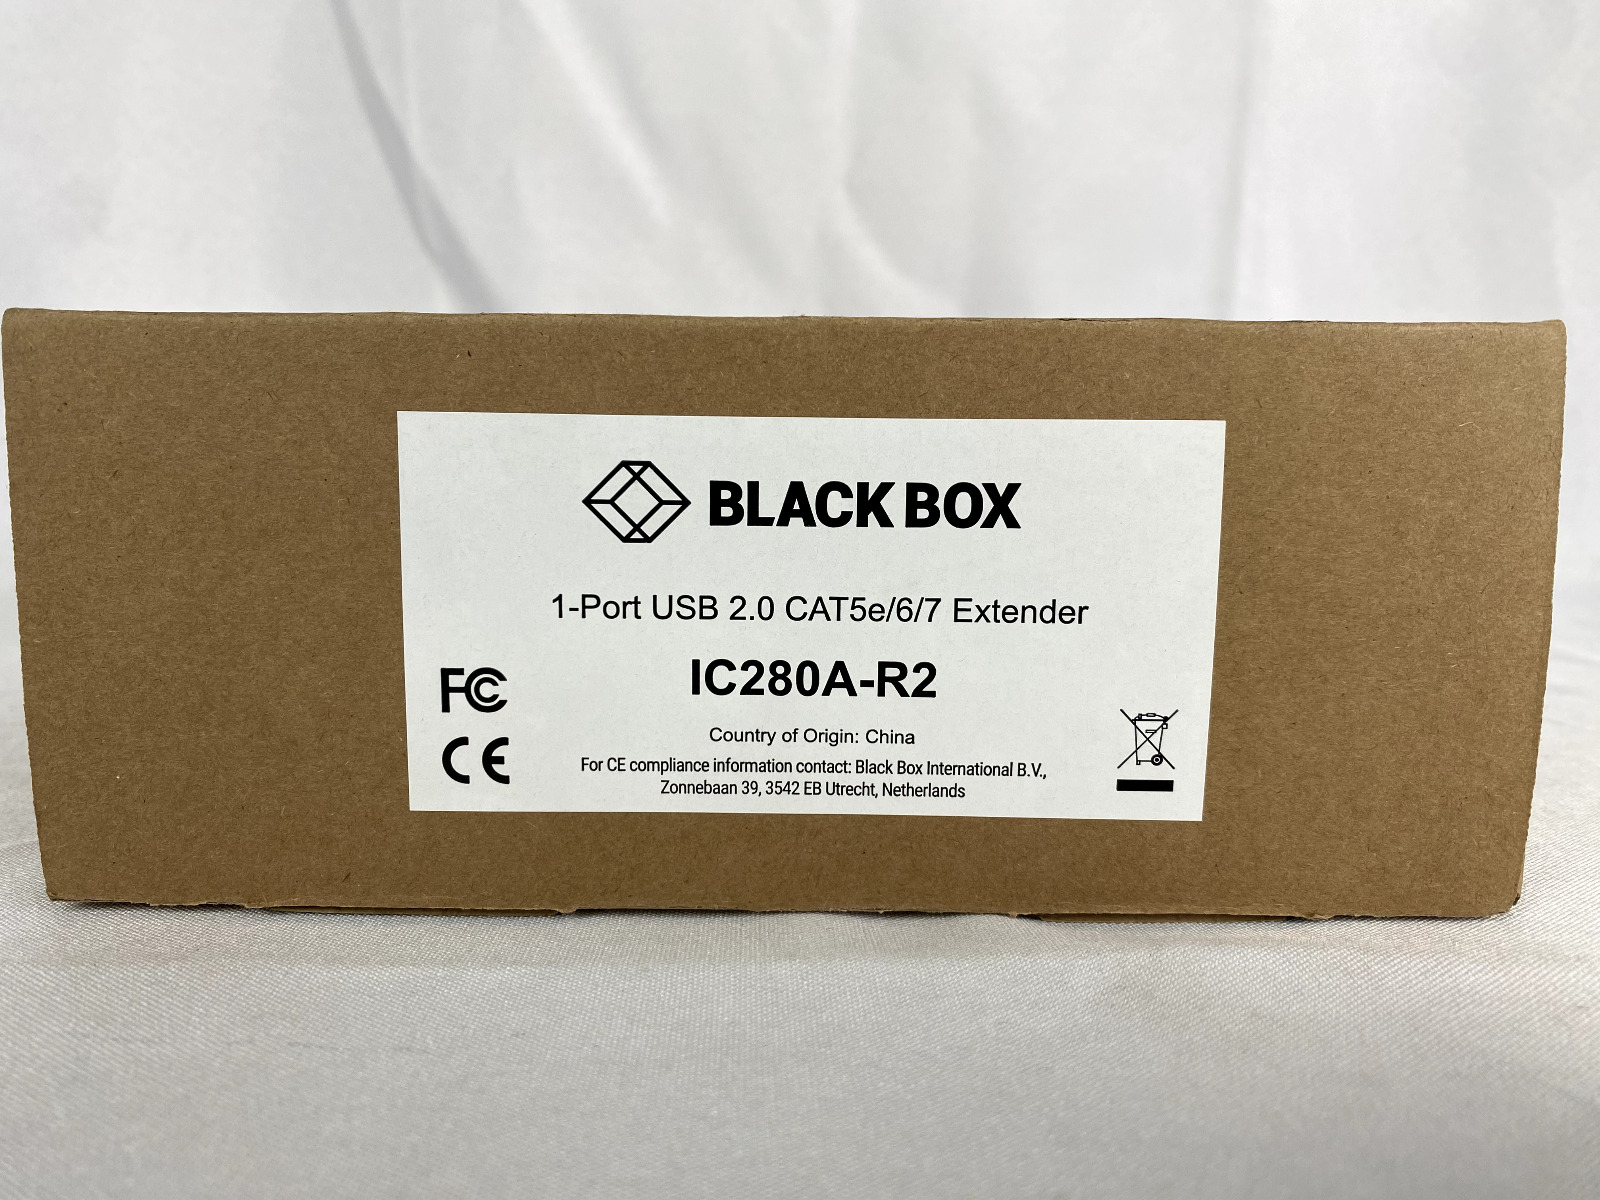 NEW Black Box IC280A-R2 USB 2.0 Extender CAT5 1-Port